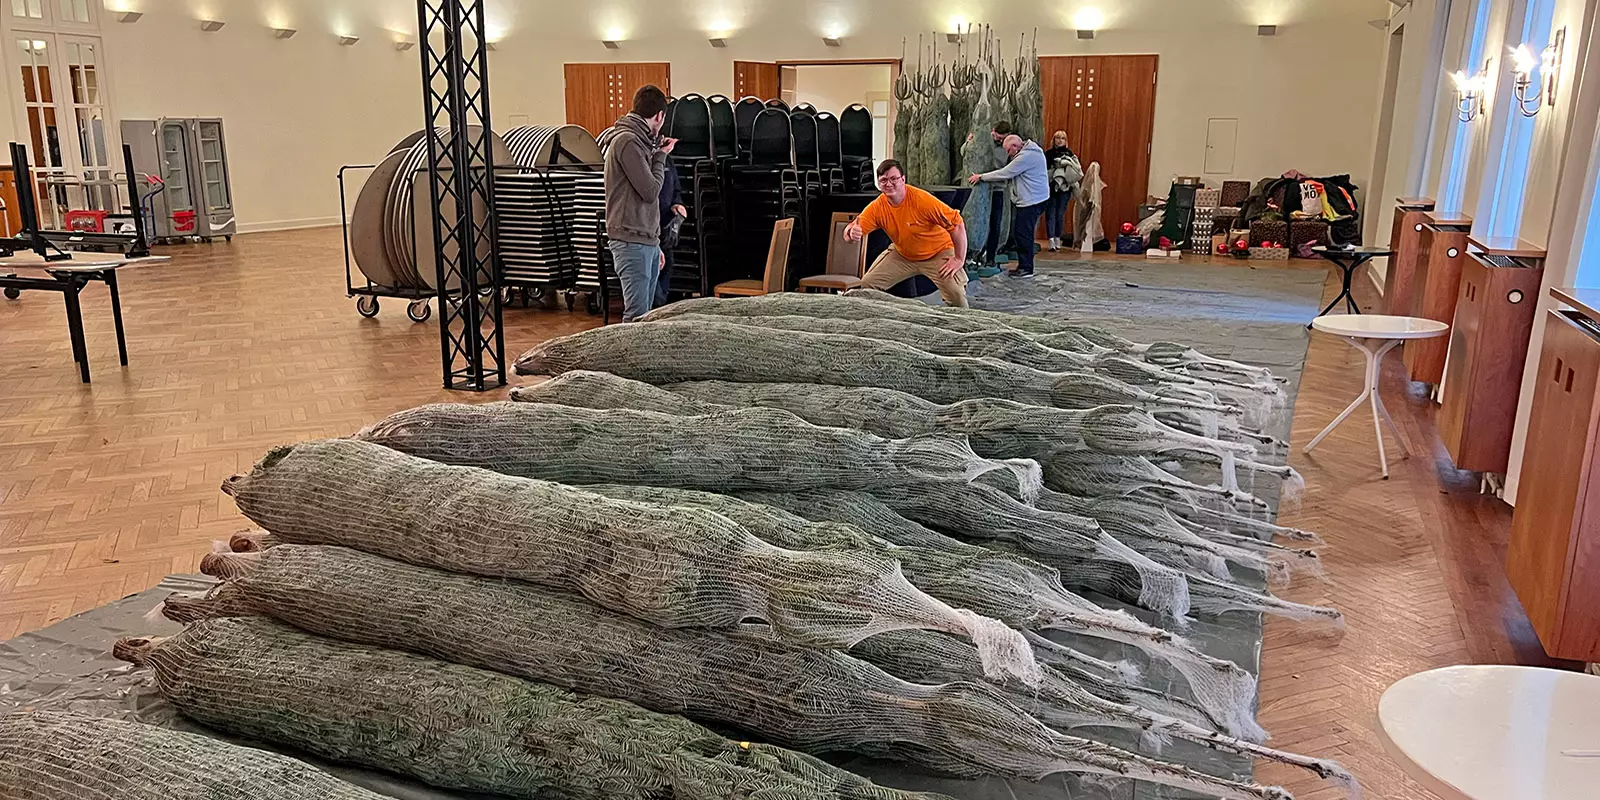 Angelieferte Bäume im großén Festsaal, die geschmückt werden müssen. Foto: zv